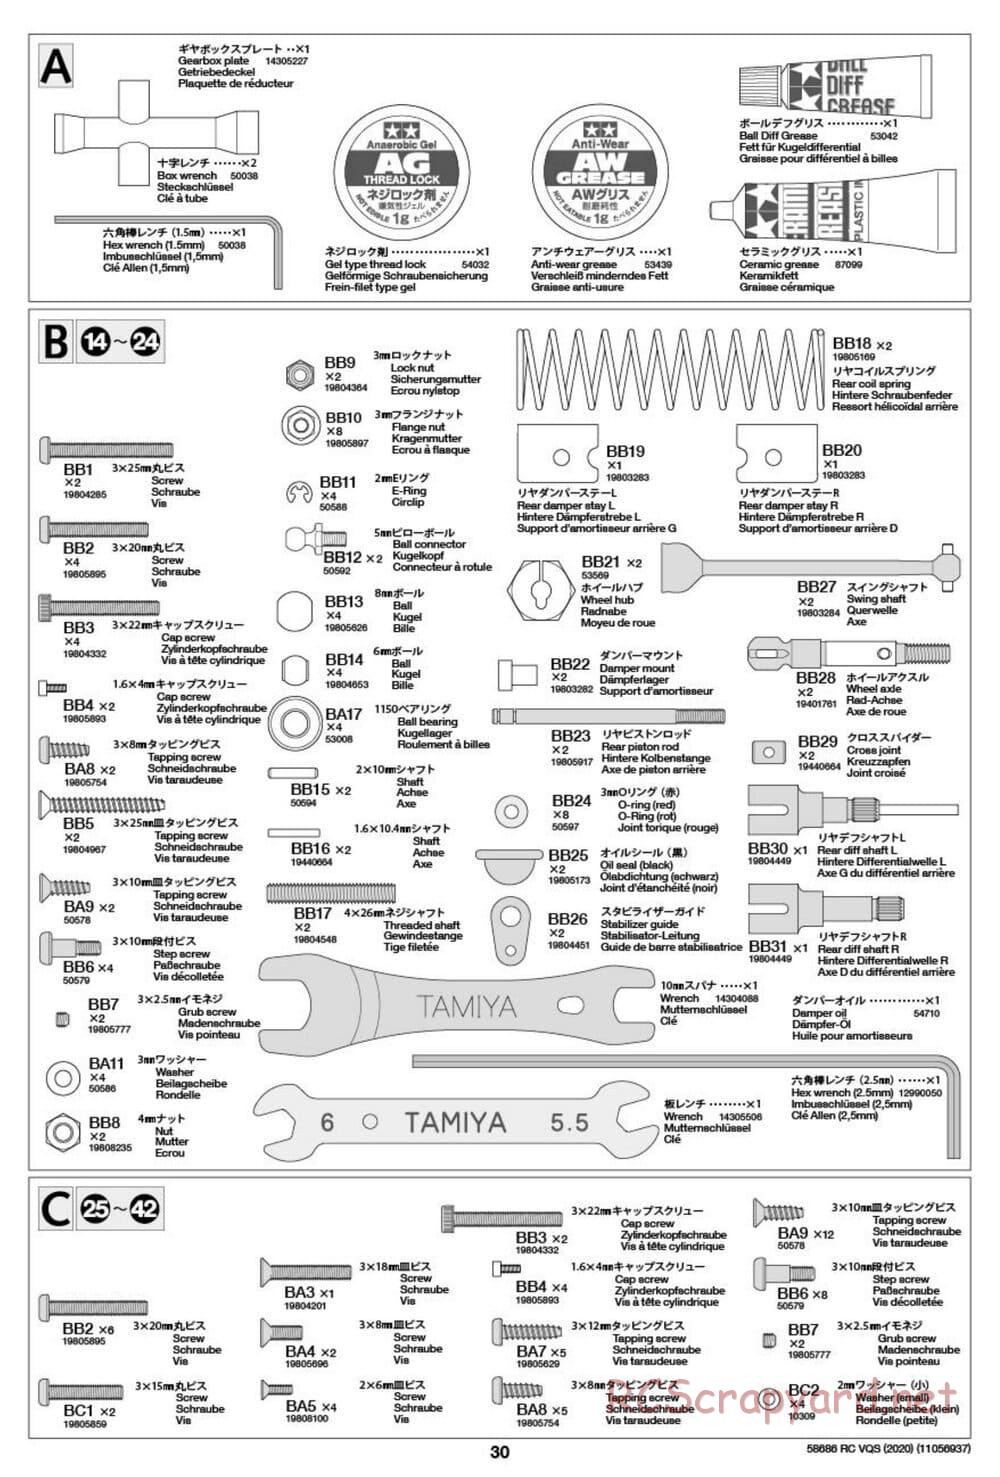 Tamiya - VQS (2020) - AV Chassis - Manual - Page 30